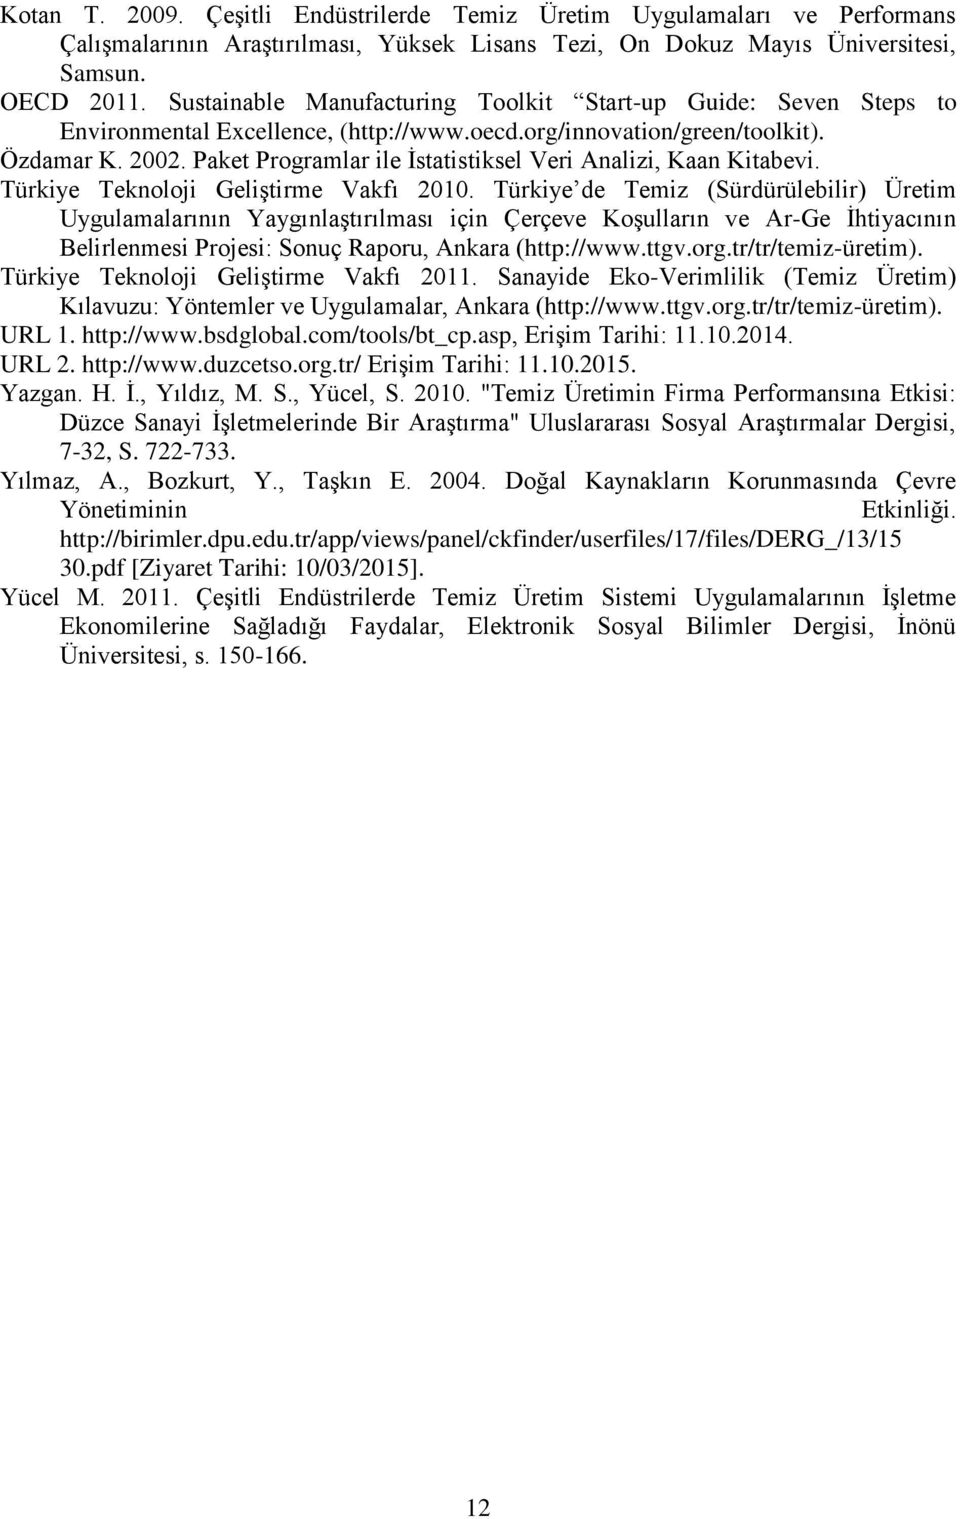 Paket Programlar ile İstatistiksel Veri Analizi, Kaan Kitabevi. Türkiye Teknoloji Geliştirme Vakfı 2010.